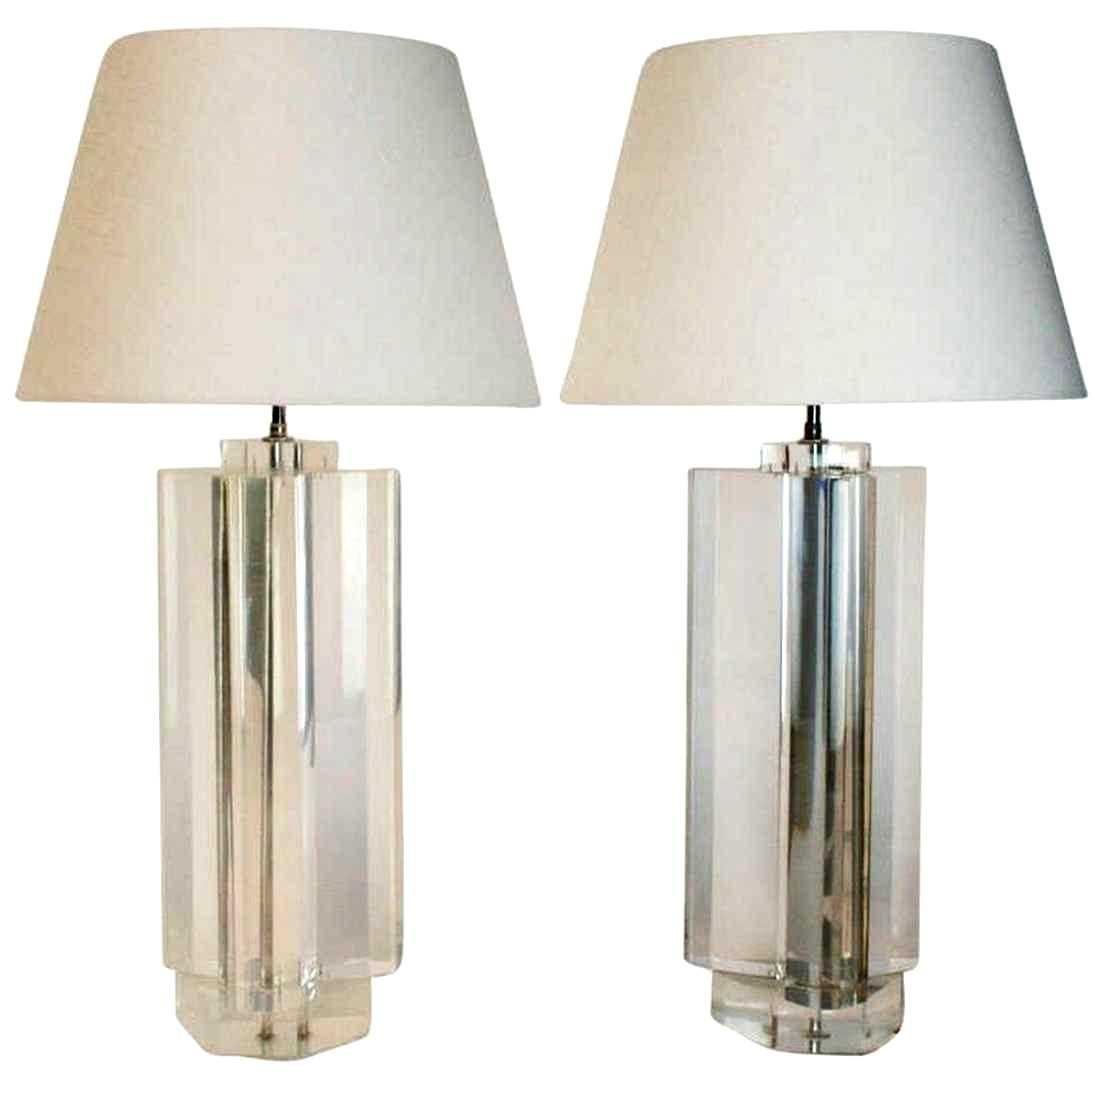 Pair of Trefoil Lucite Table Lamps by Les Prismatiques For Sale